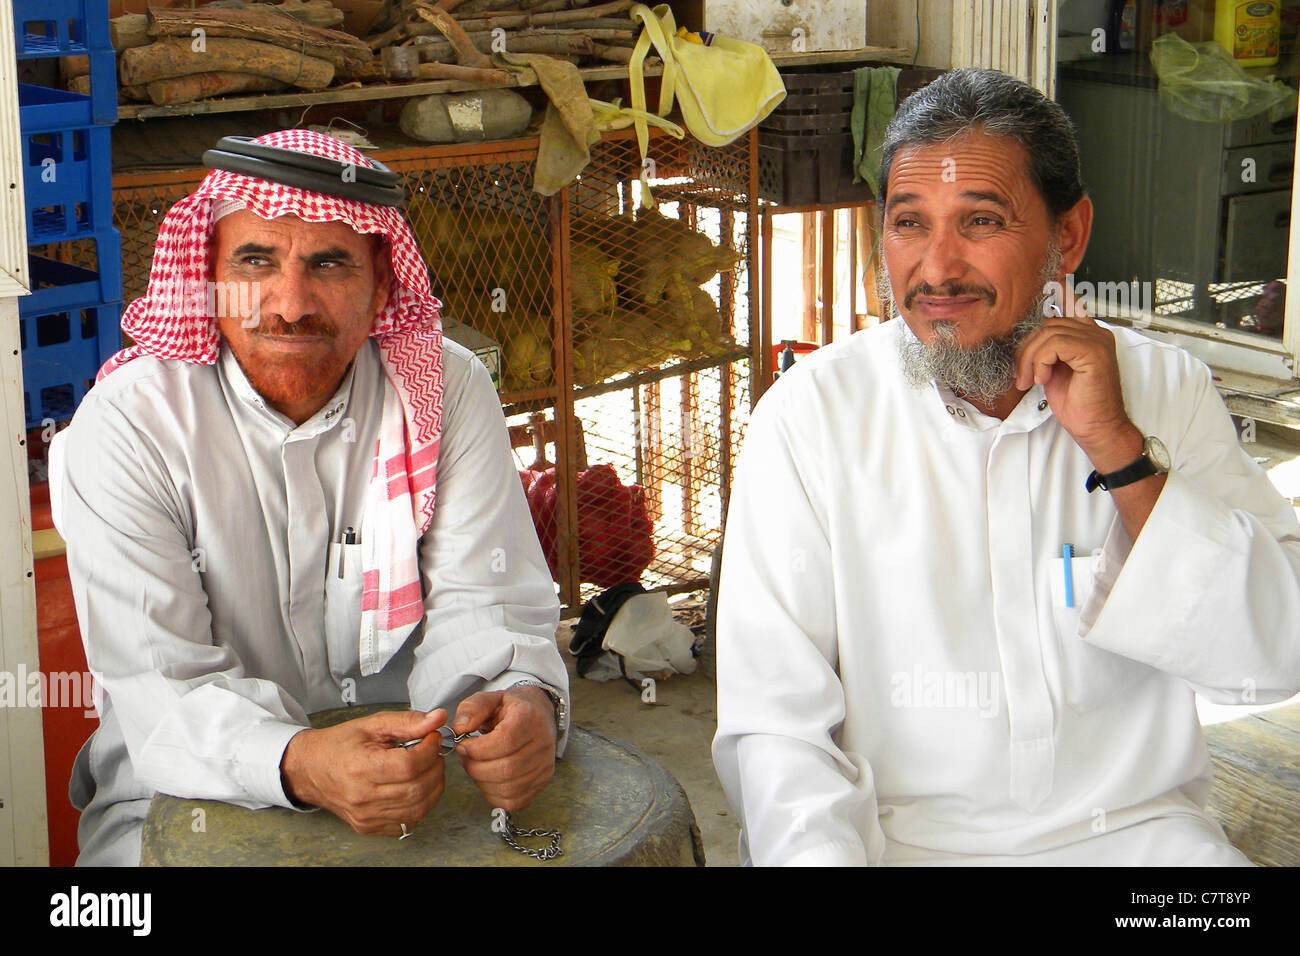 Arabia Saudita, uomo nel negozio Foto Stock